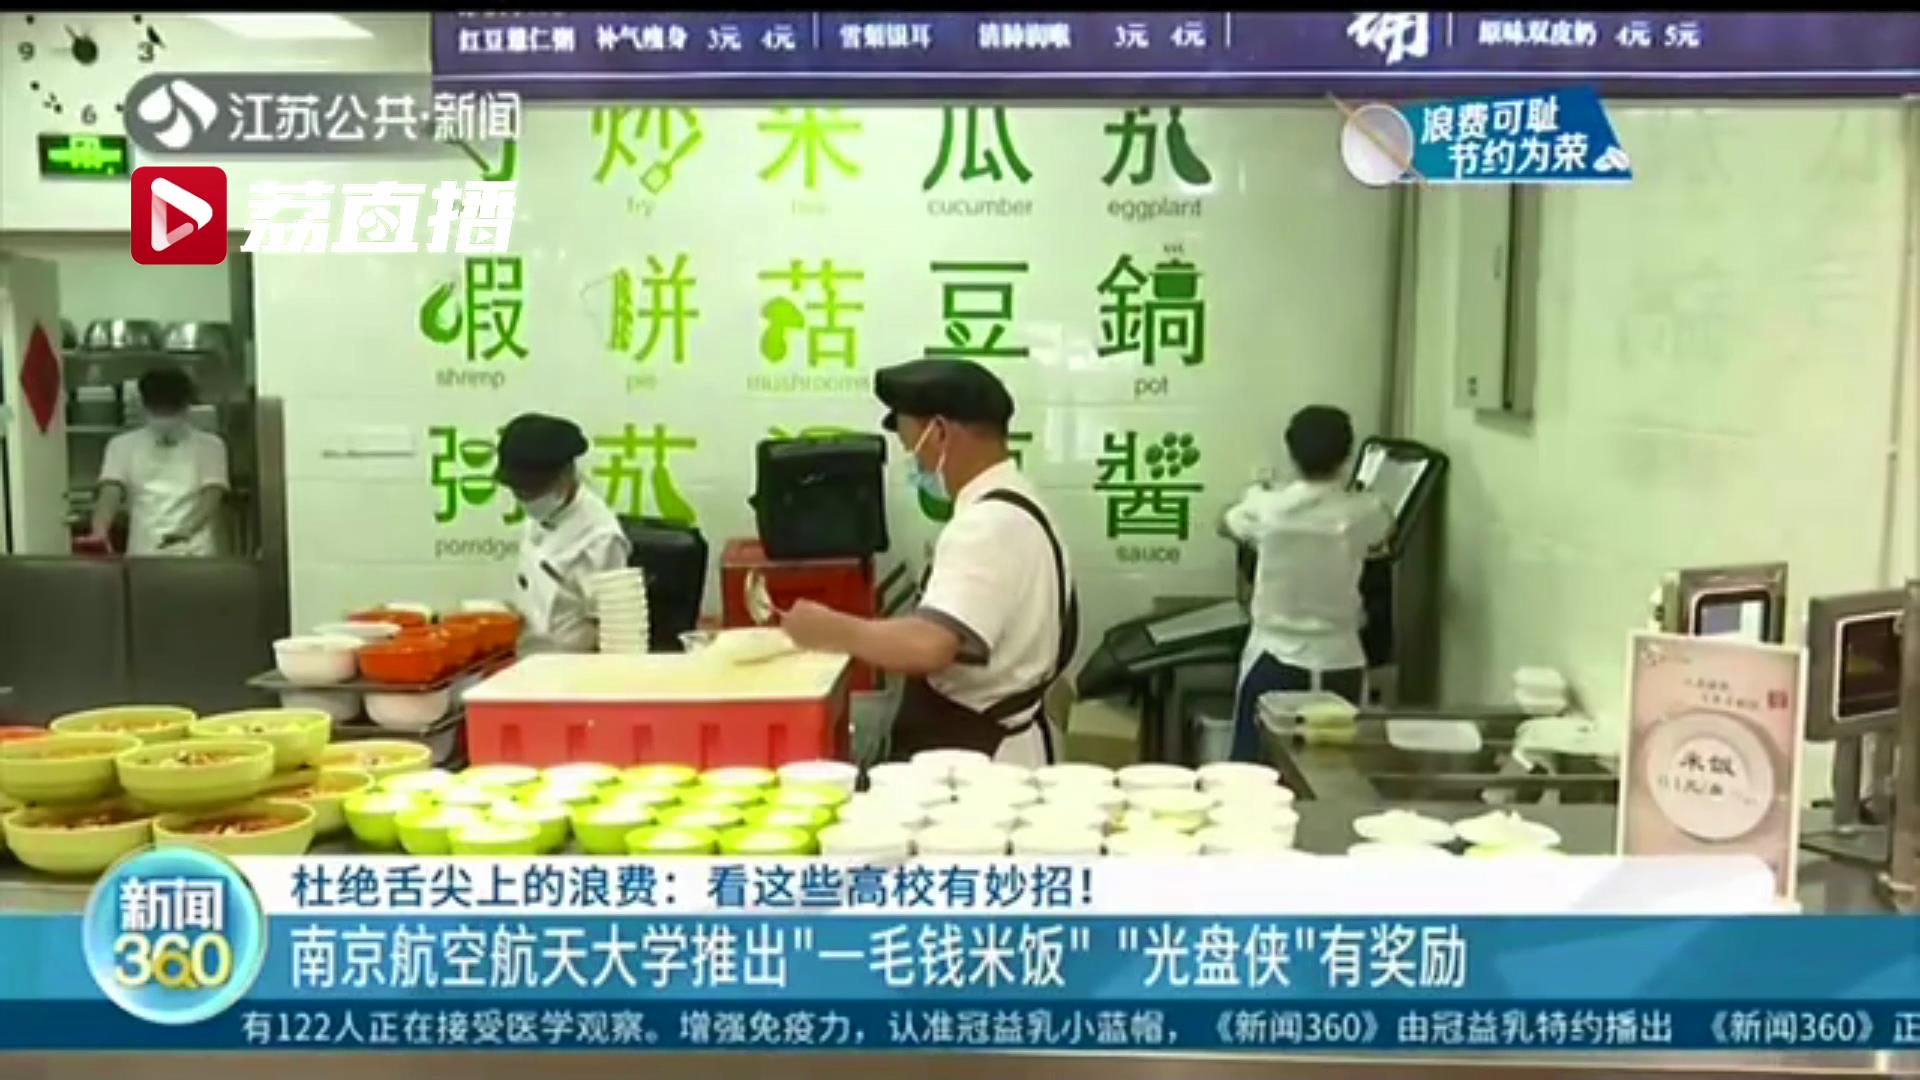 肉菜称重、拼菜、一毛钱米饭…江苏高校食堂厉行节约新举措深受欢迎